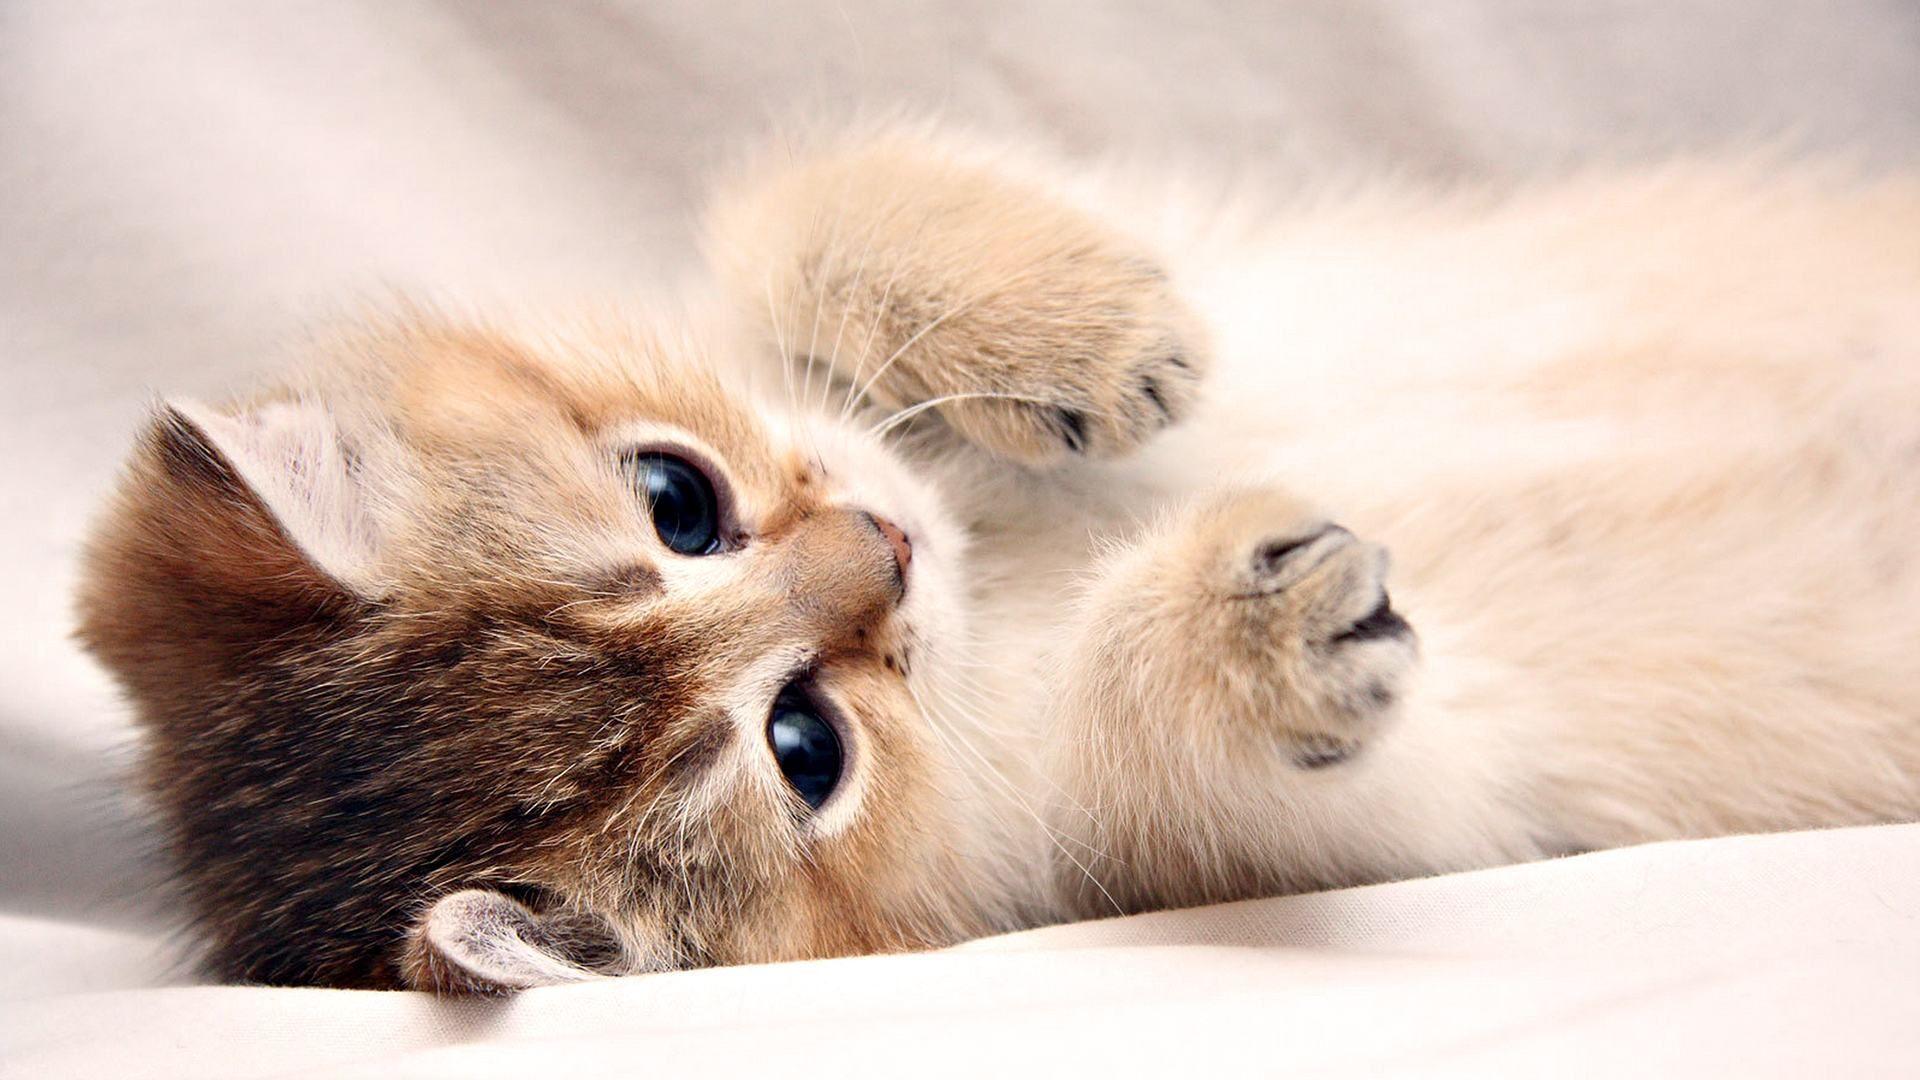 Mèo (Cat): Những chú mèo với đôi mắt to tròn, đuôi dài và bộ lông mềm mại sẽ khiến bạn liên tưởng đến sự dễ thương và nghịch ngợm. Hãy xem những bức ảnh về mèo để thỏa mãn sự yêu thích của bạn với những chú mèo đáng yêu và thú vị.